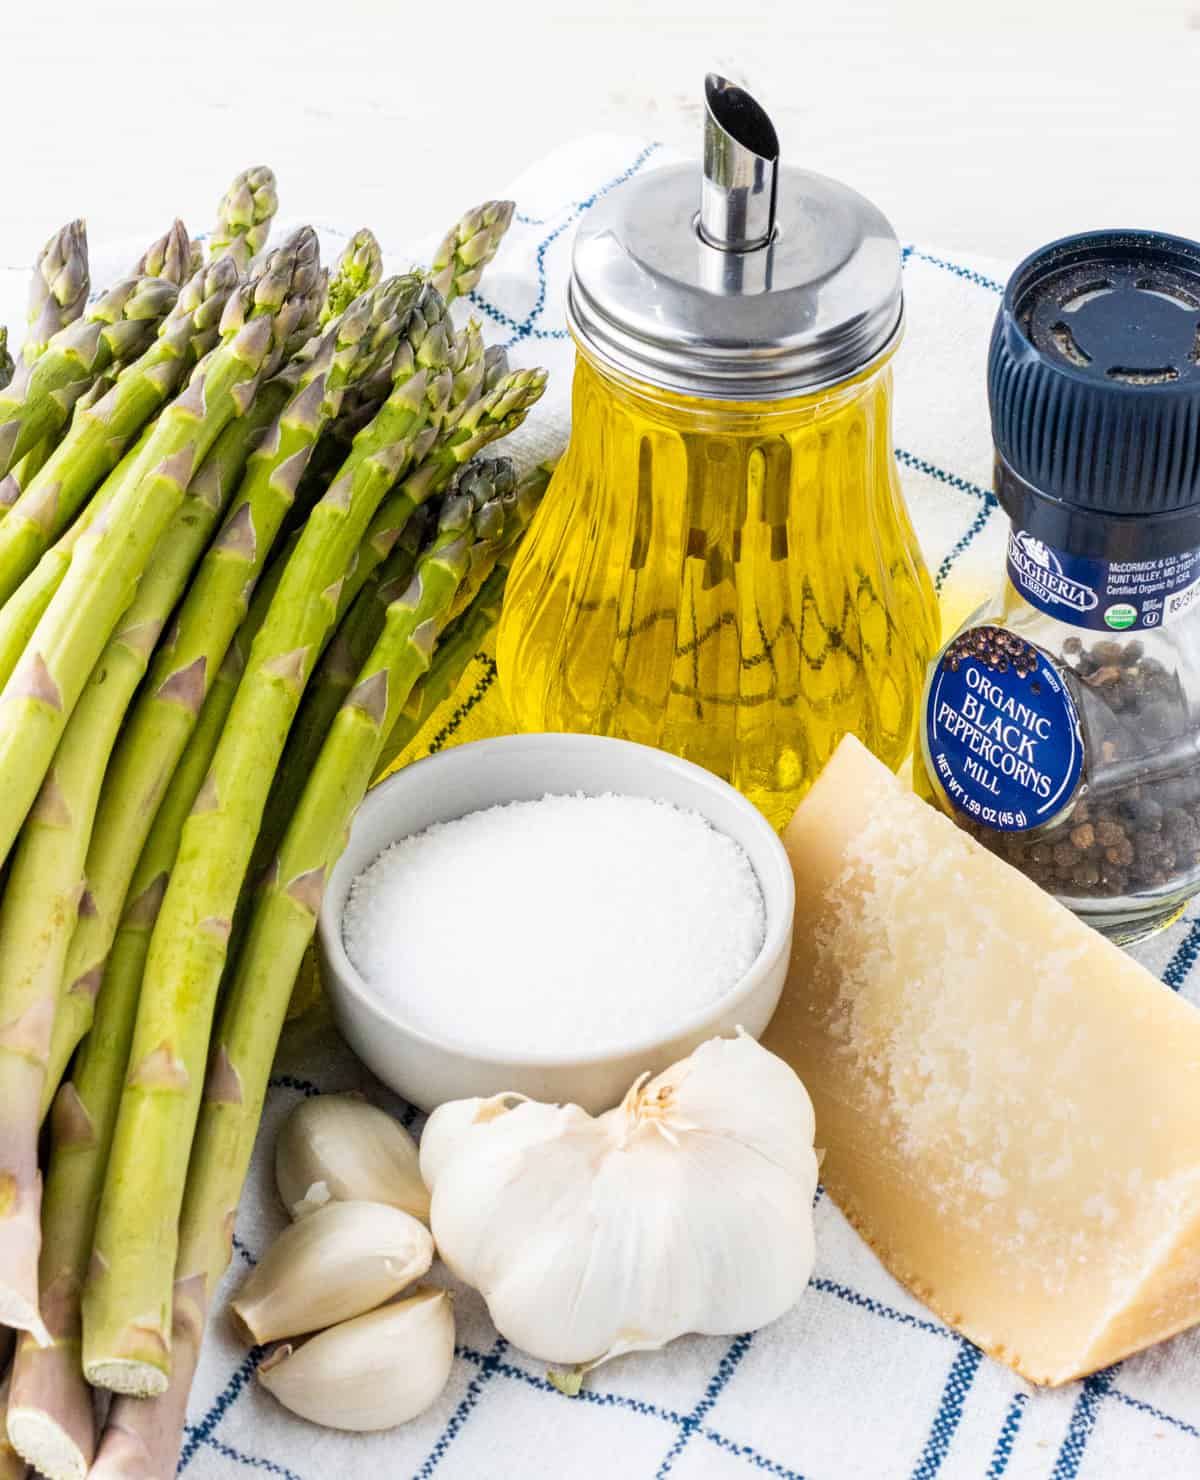 Ingredients for garlic parmesan asparagus.